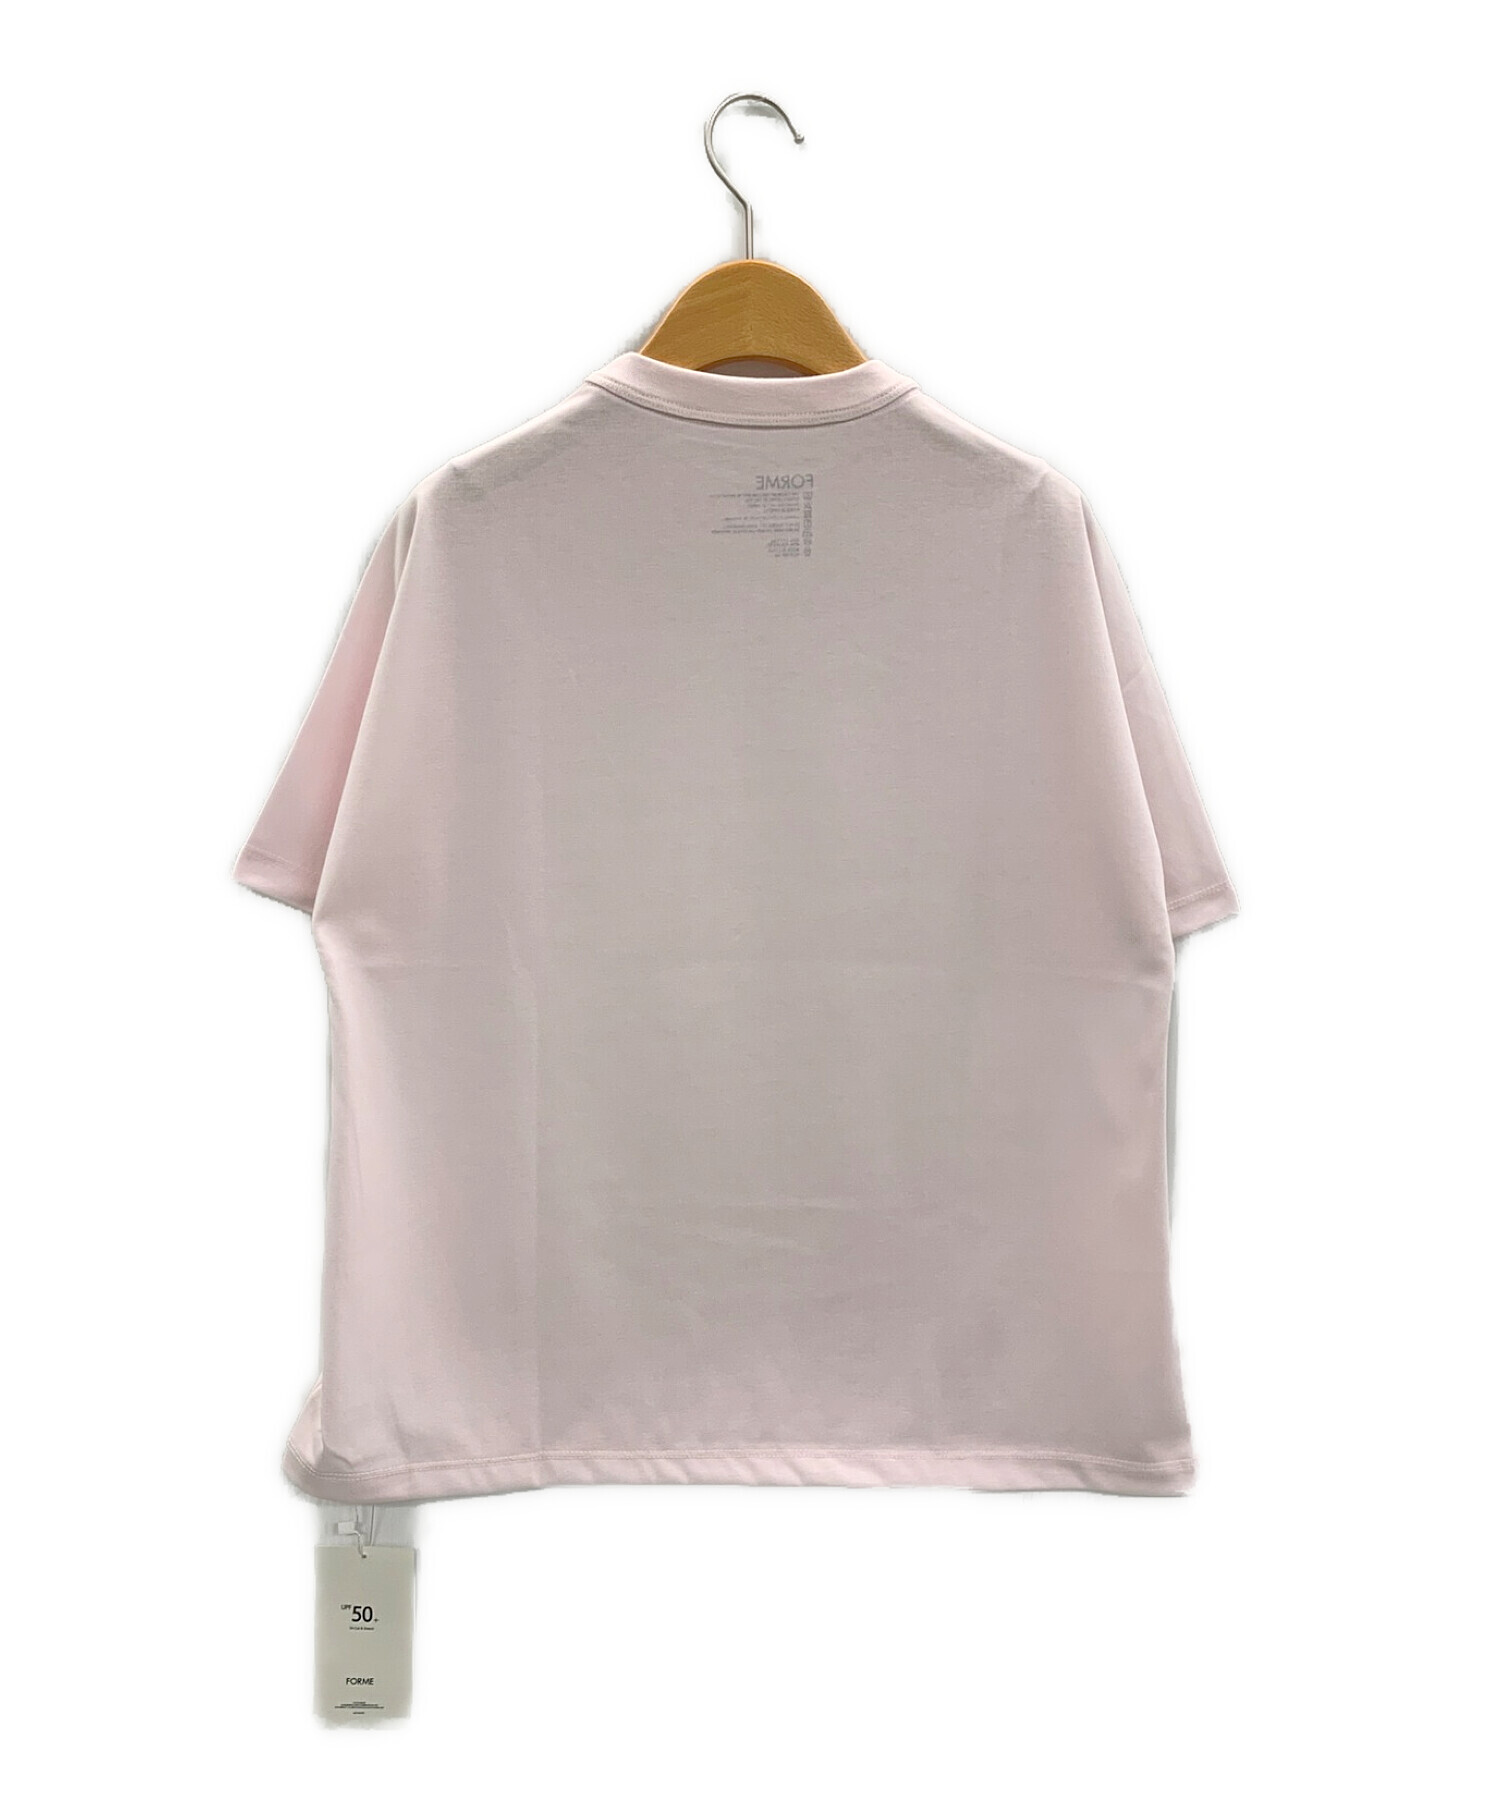 forme (フォルメ) 東原亜希 (ヒガシハラアキ) UVカットTシャツ ライトピンク サイズ:F